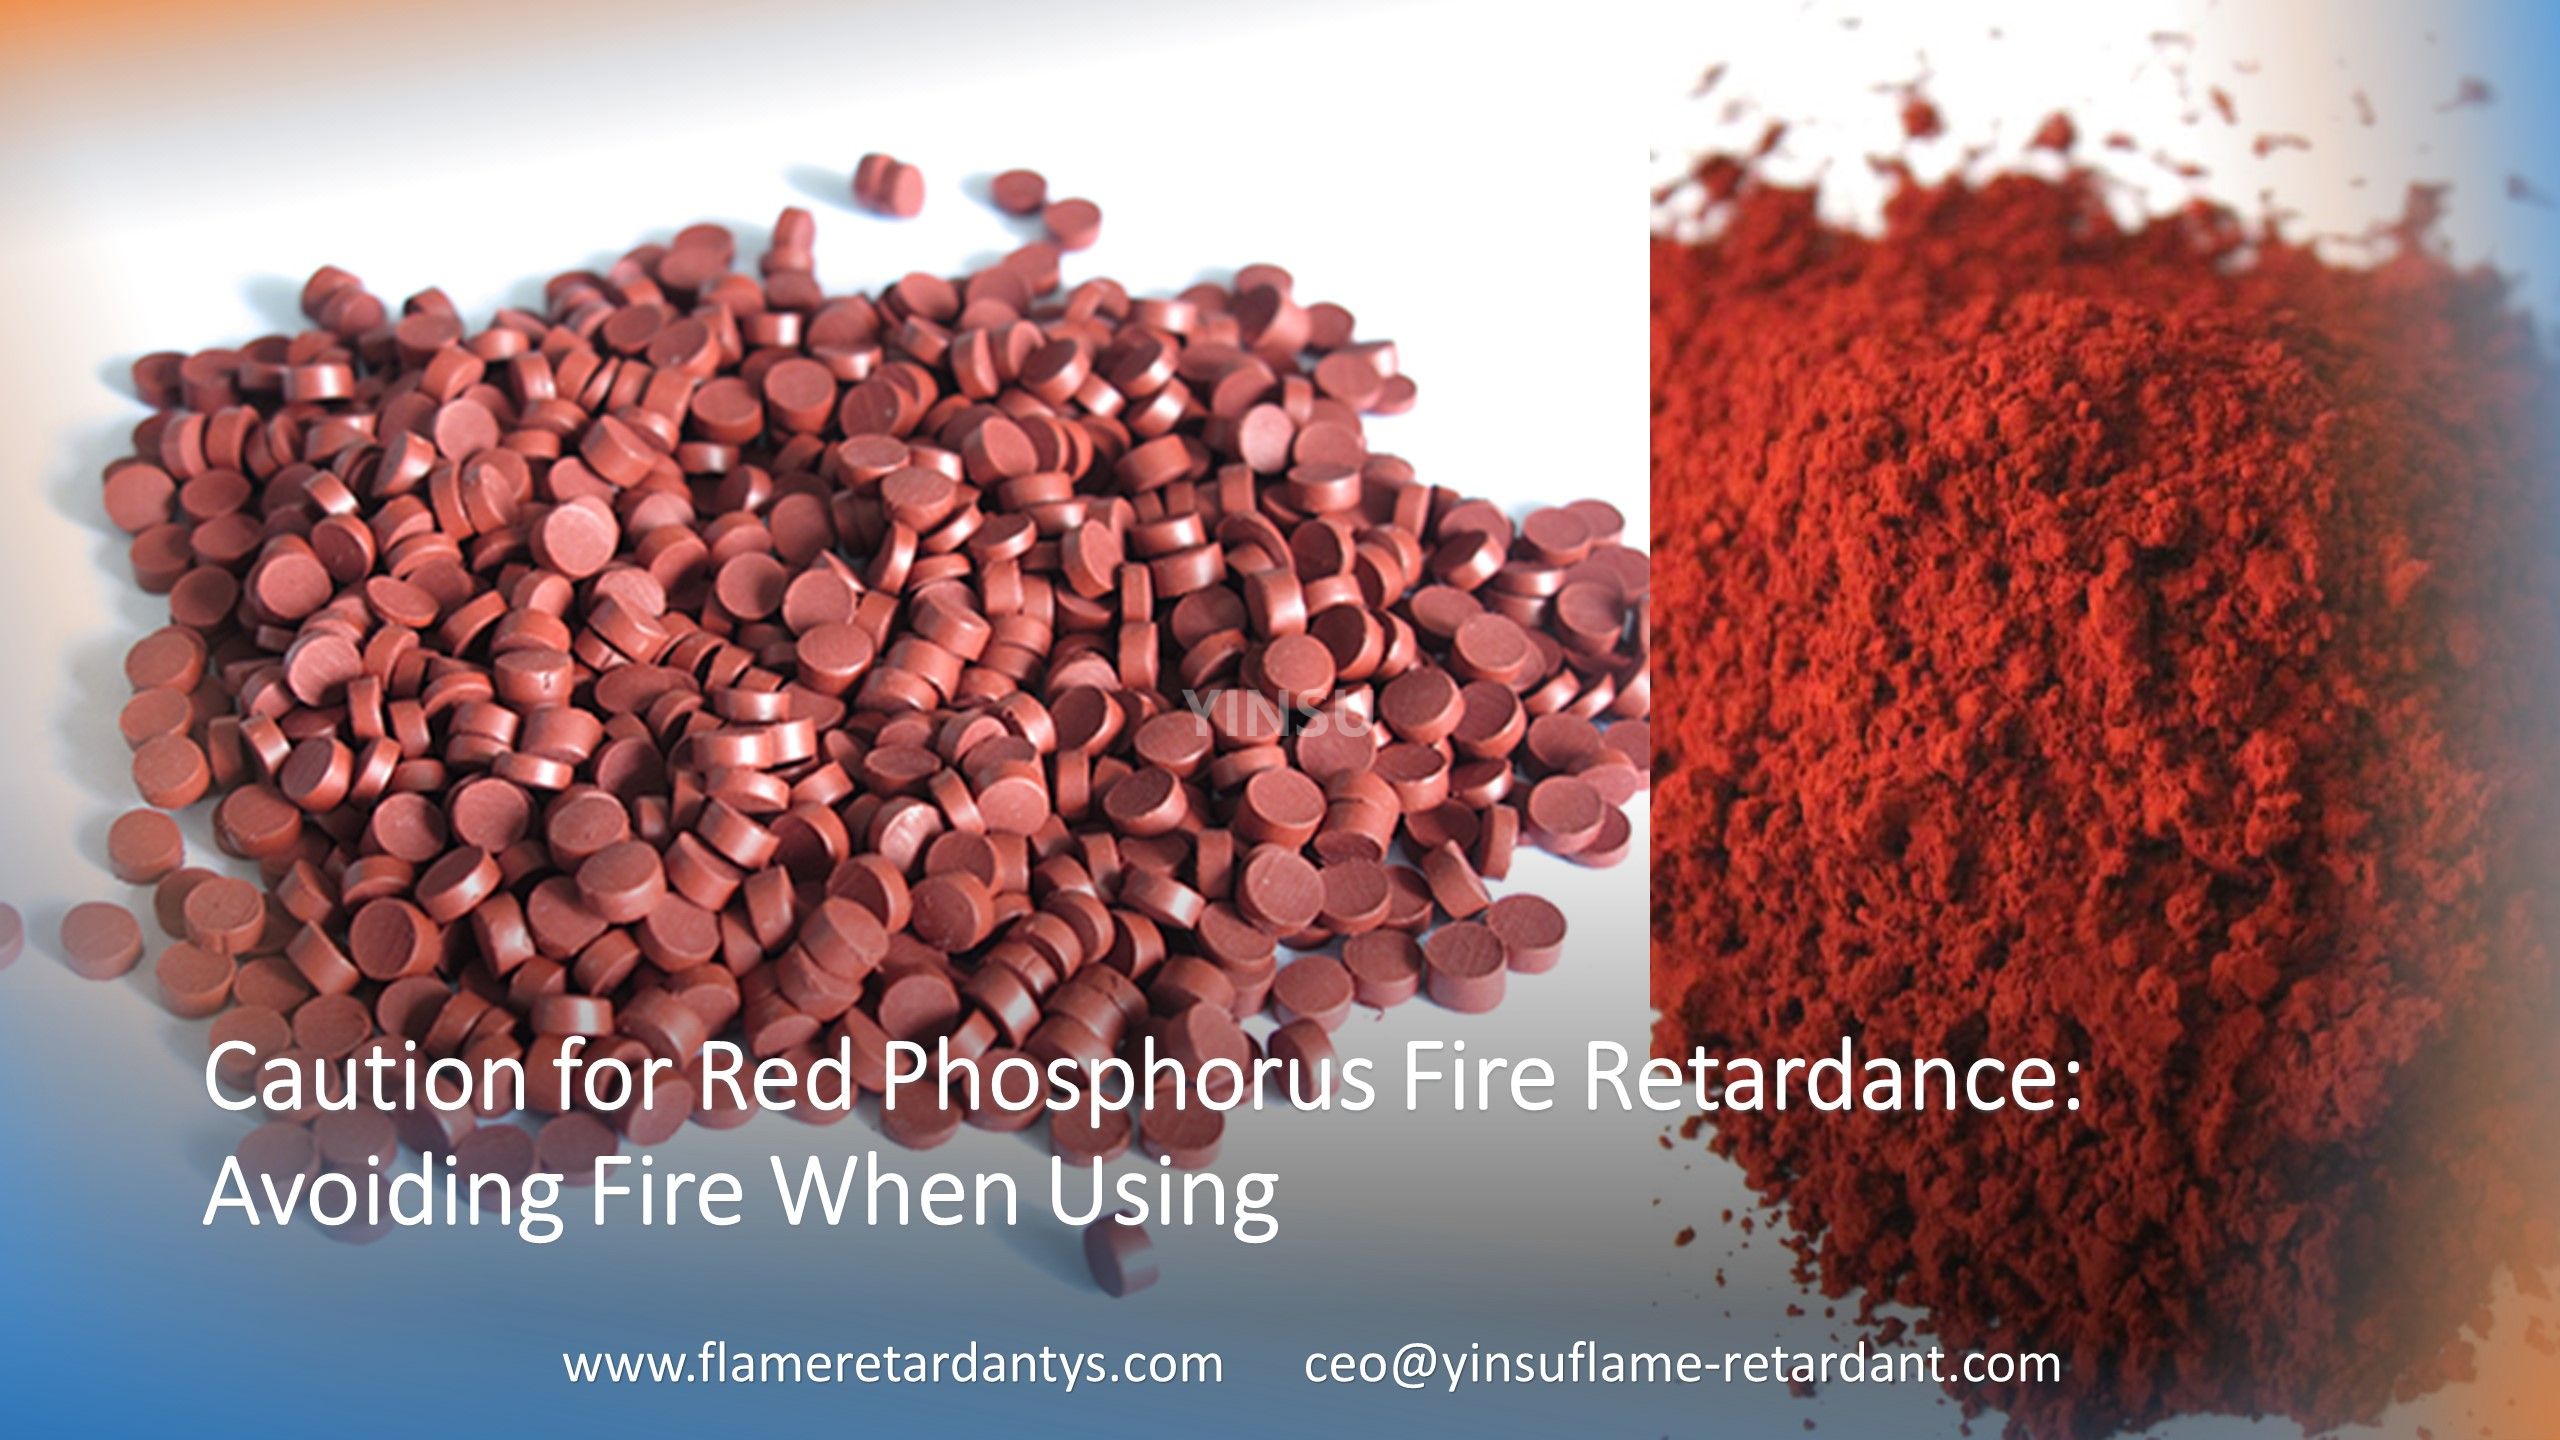 الحذر من مثبطات الفوسفور الأحمر للحريق: تجنب الحريق عند الاستخدام